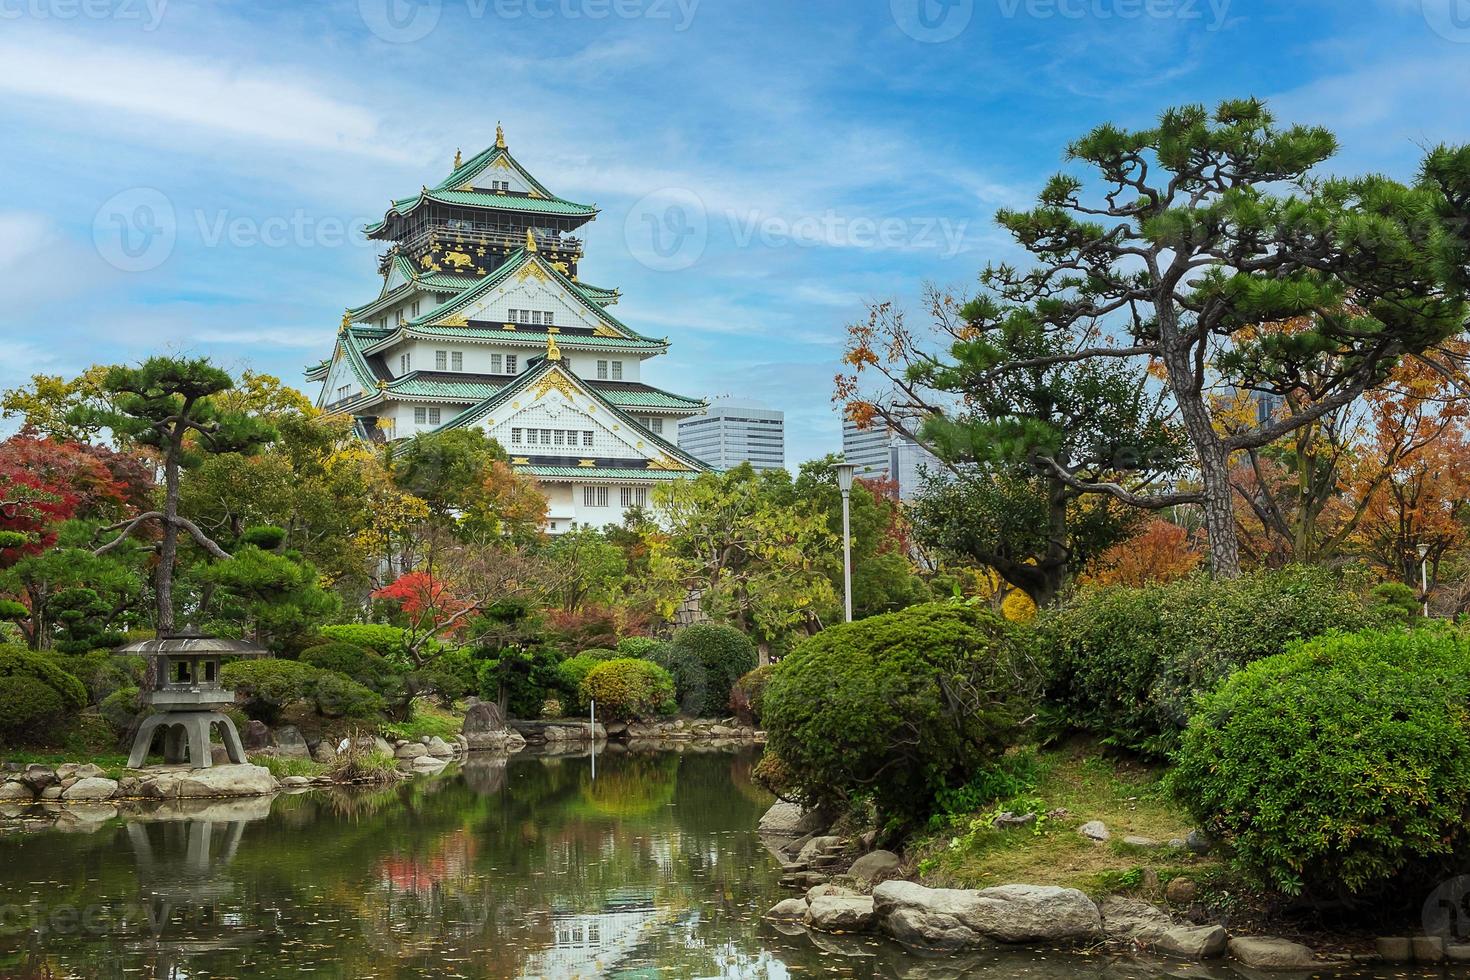 le château d'osaka en saison de feuillage d'automne, est un célèbre château japonais, point de repère et populaire pour les attractions touristiques d'osaka, kansai, japon photo